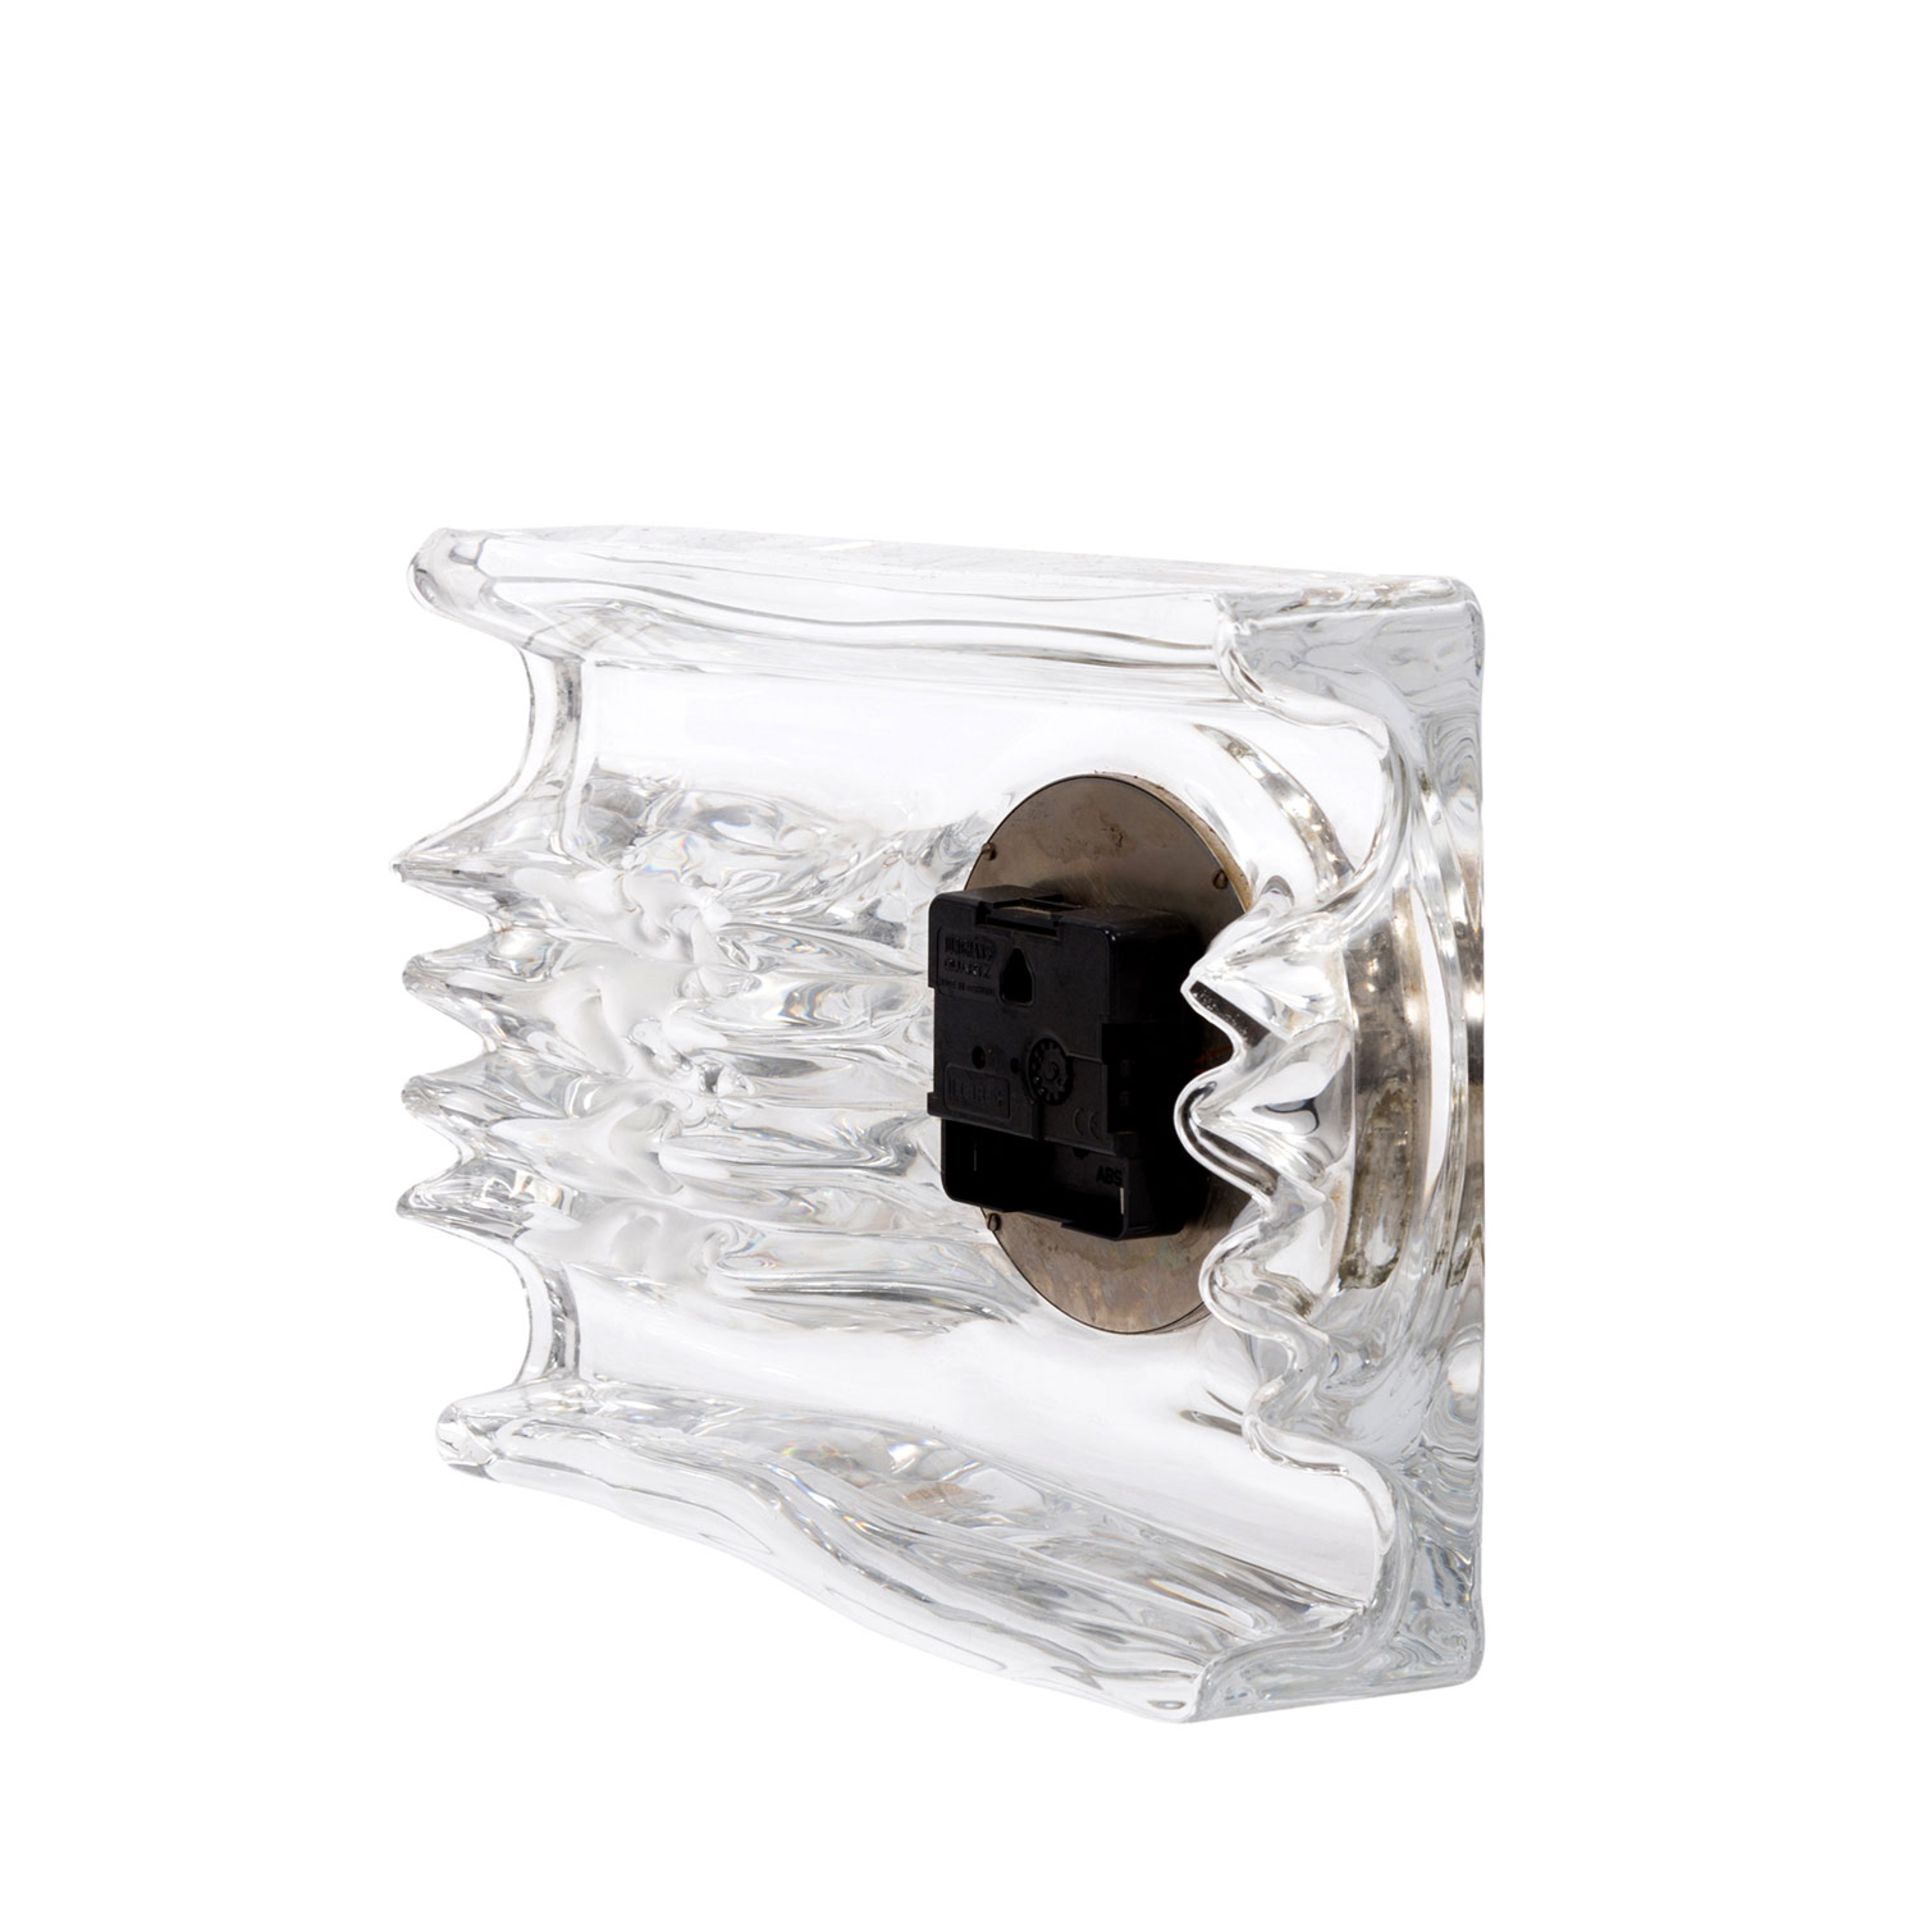 DAUM Quartz-Uhr, 20.Jh.quadratischer Glaskorpus mit eingesetzter Uhr, batteriebetrieben, - Bild 3 aus 4